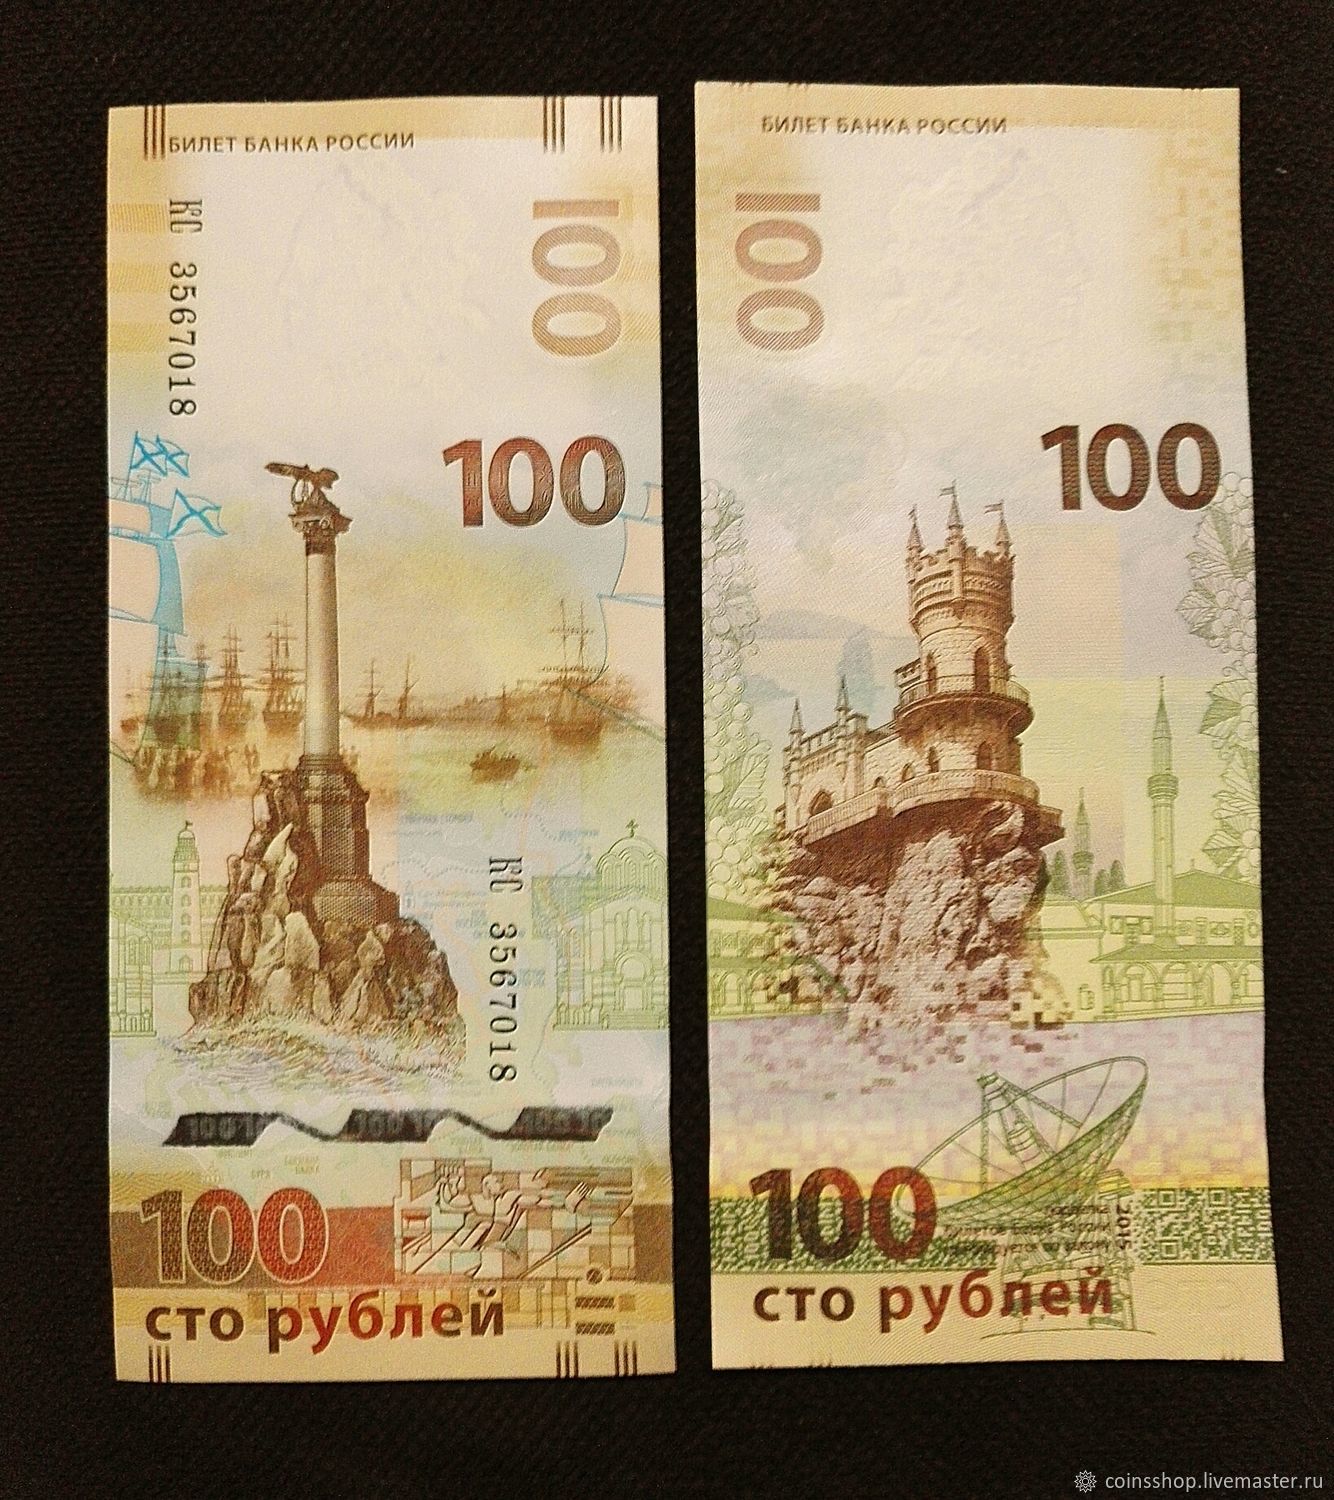 Памятная банкнота банка россии образца 2018 года номиналом 100 рублей за сколько можно продать